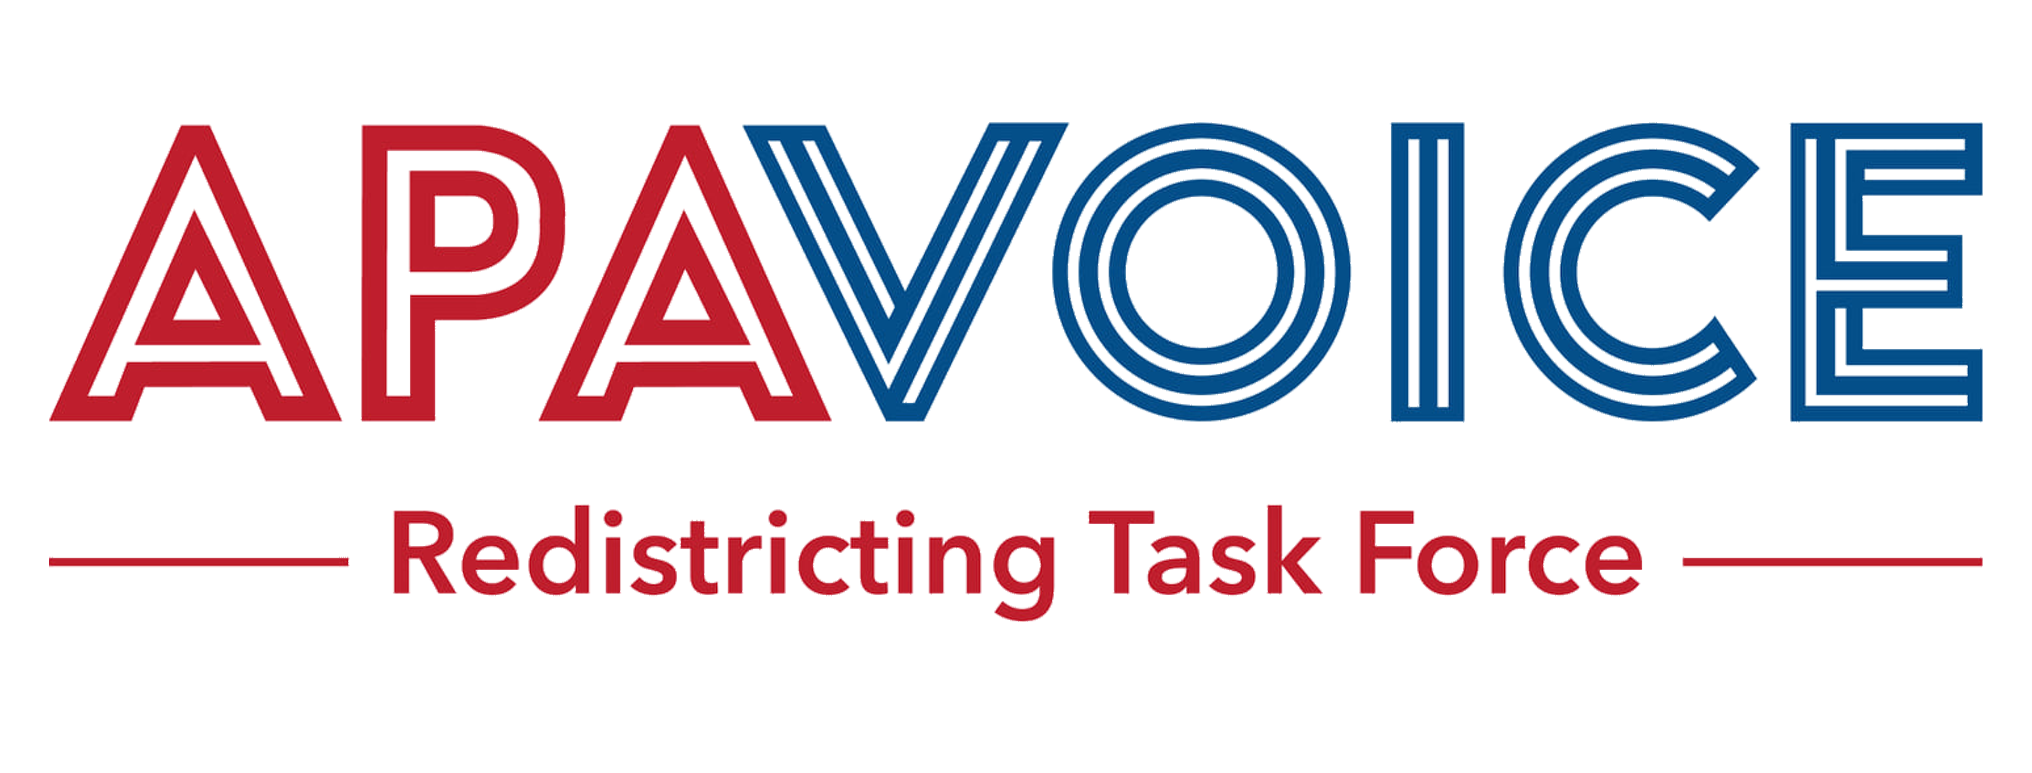 APA Voice Redistricting Task Force logo.png